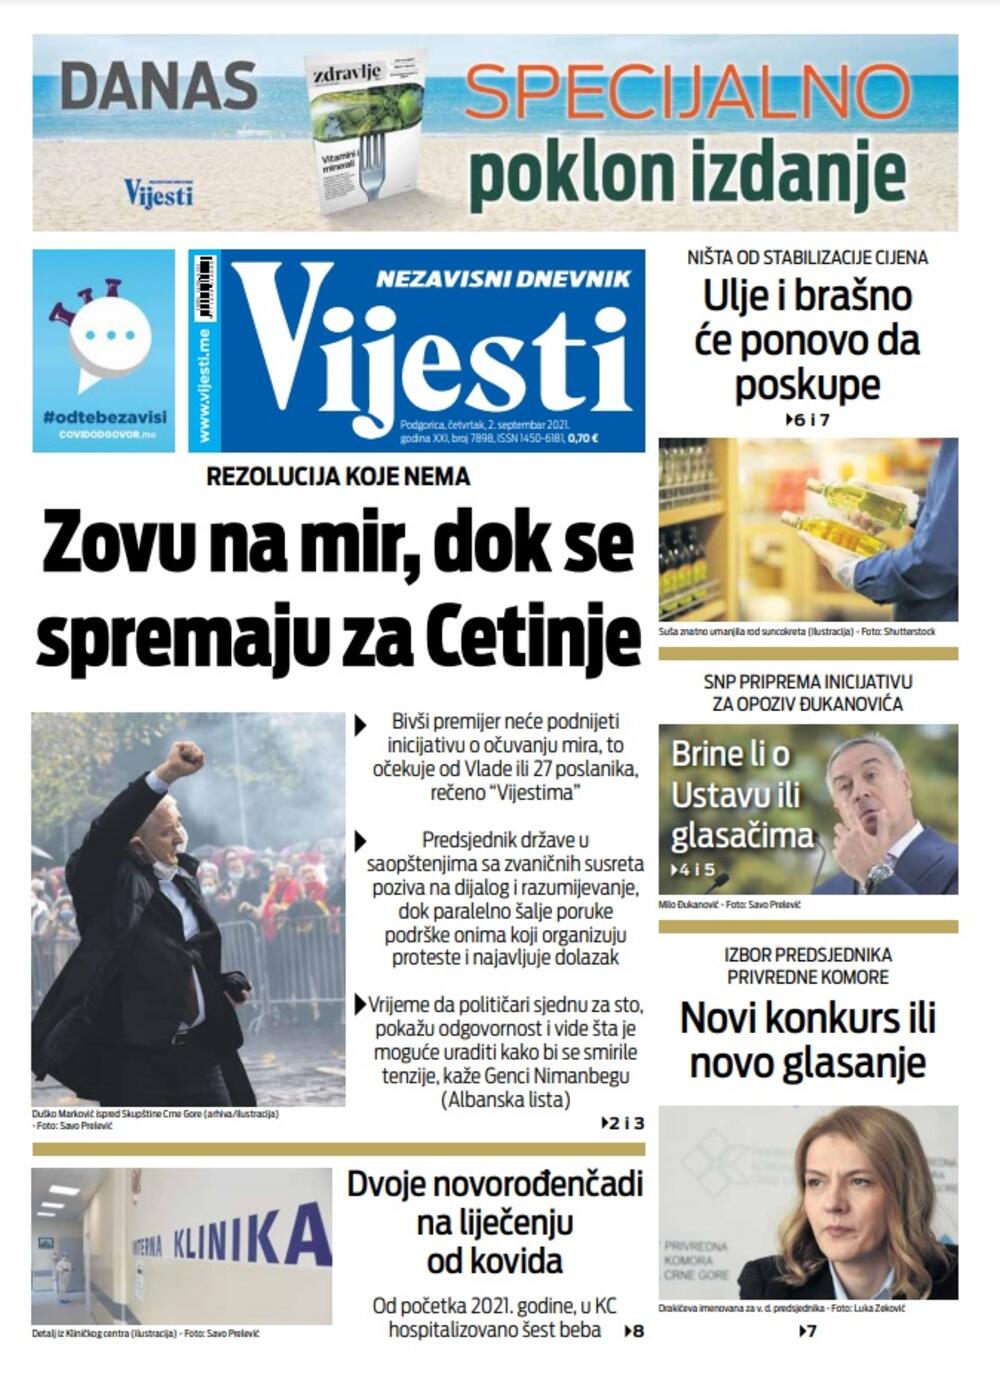 Naslovna strana "Vijesti" za 2. septembar 2021., Foto: Vijesti